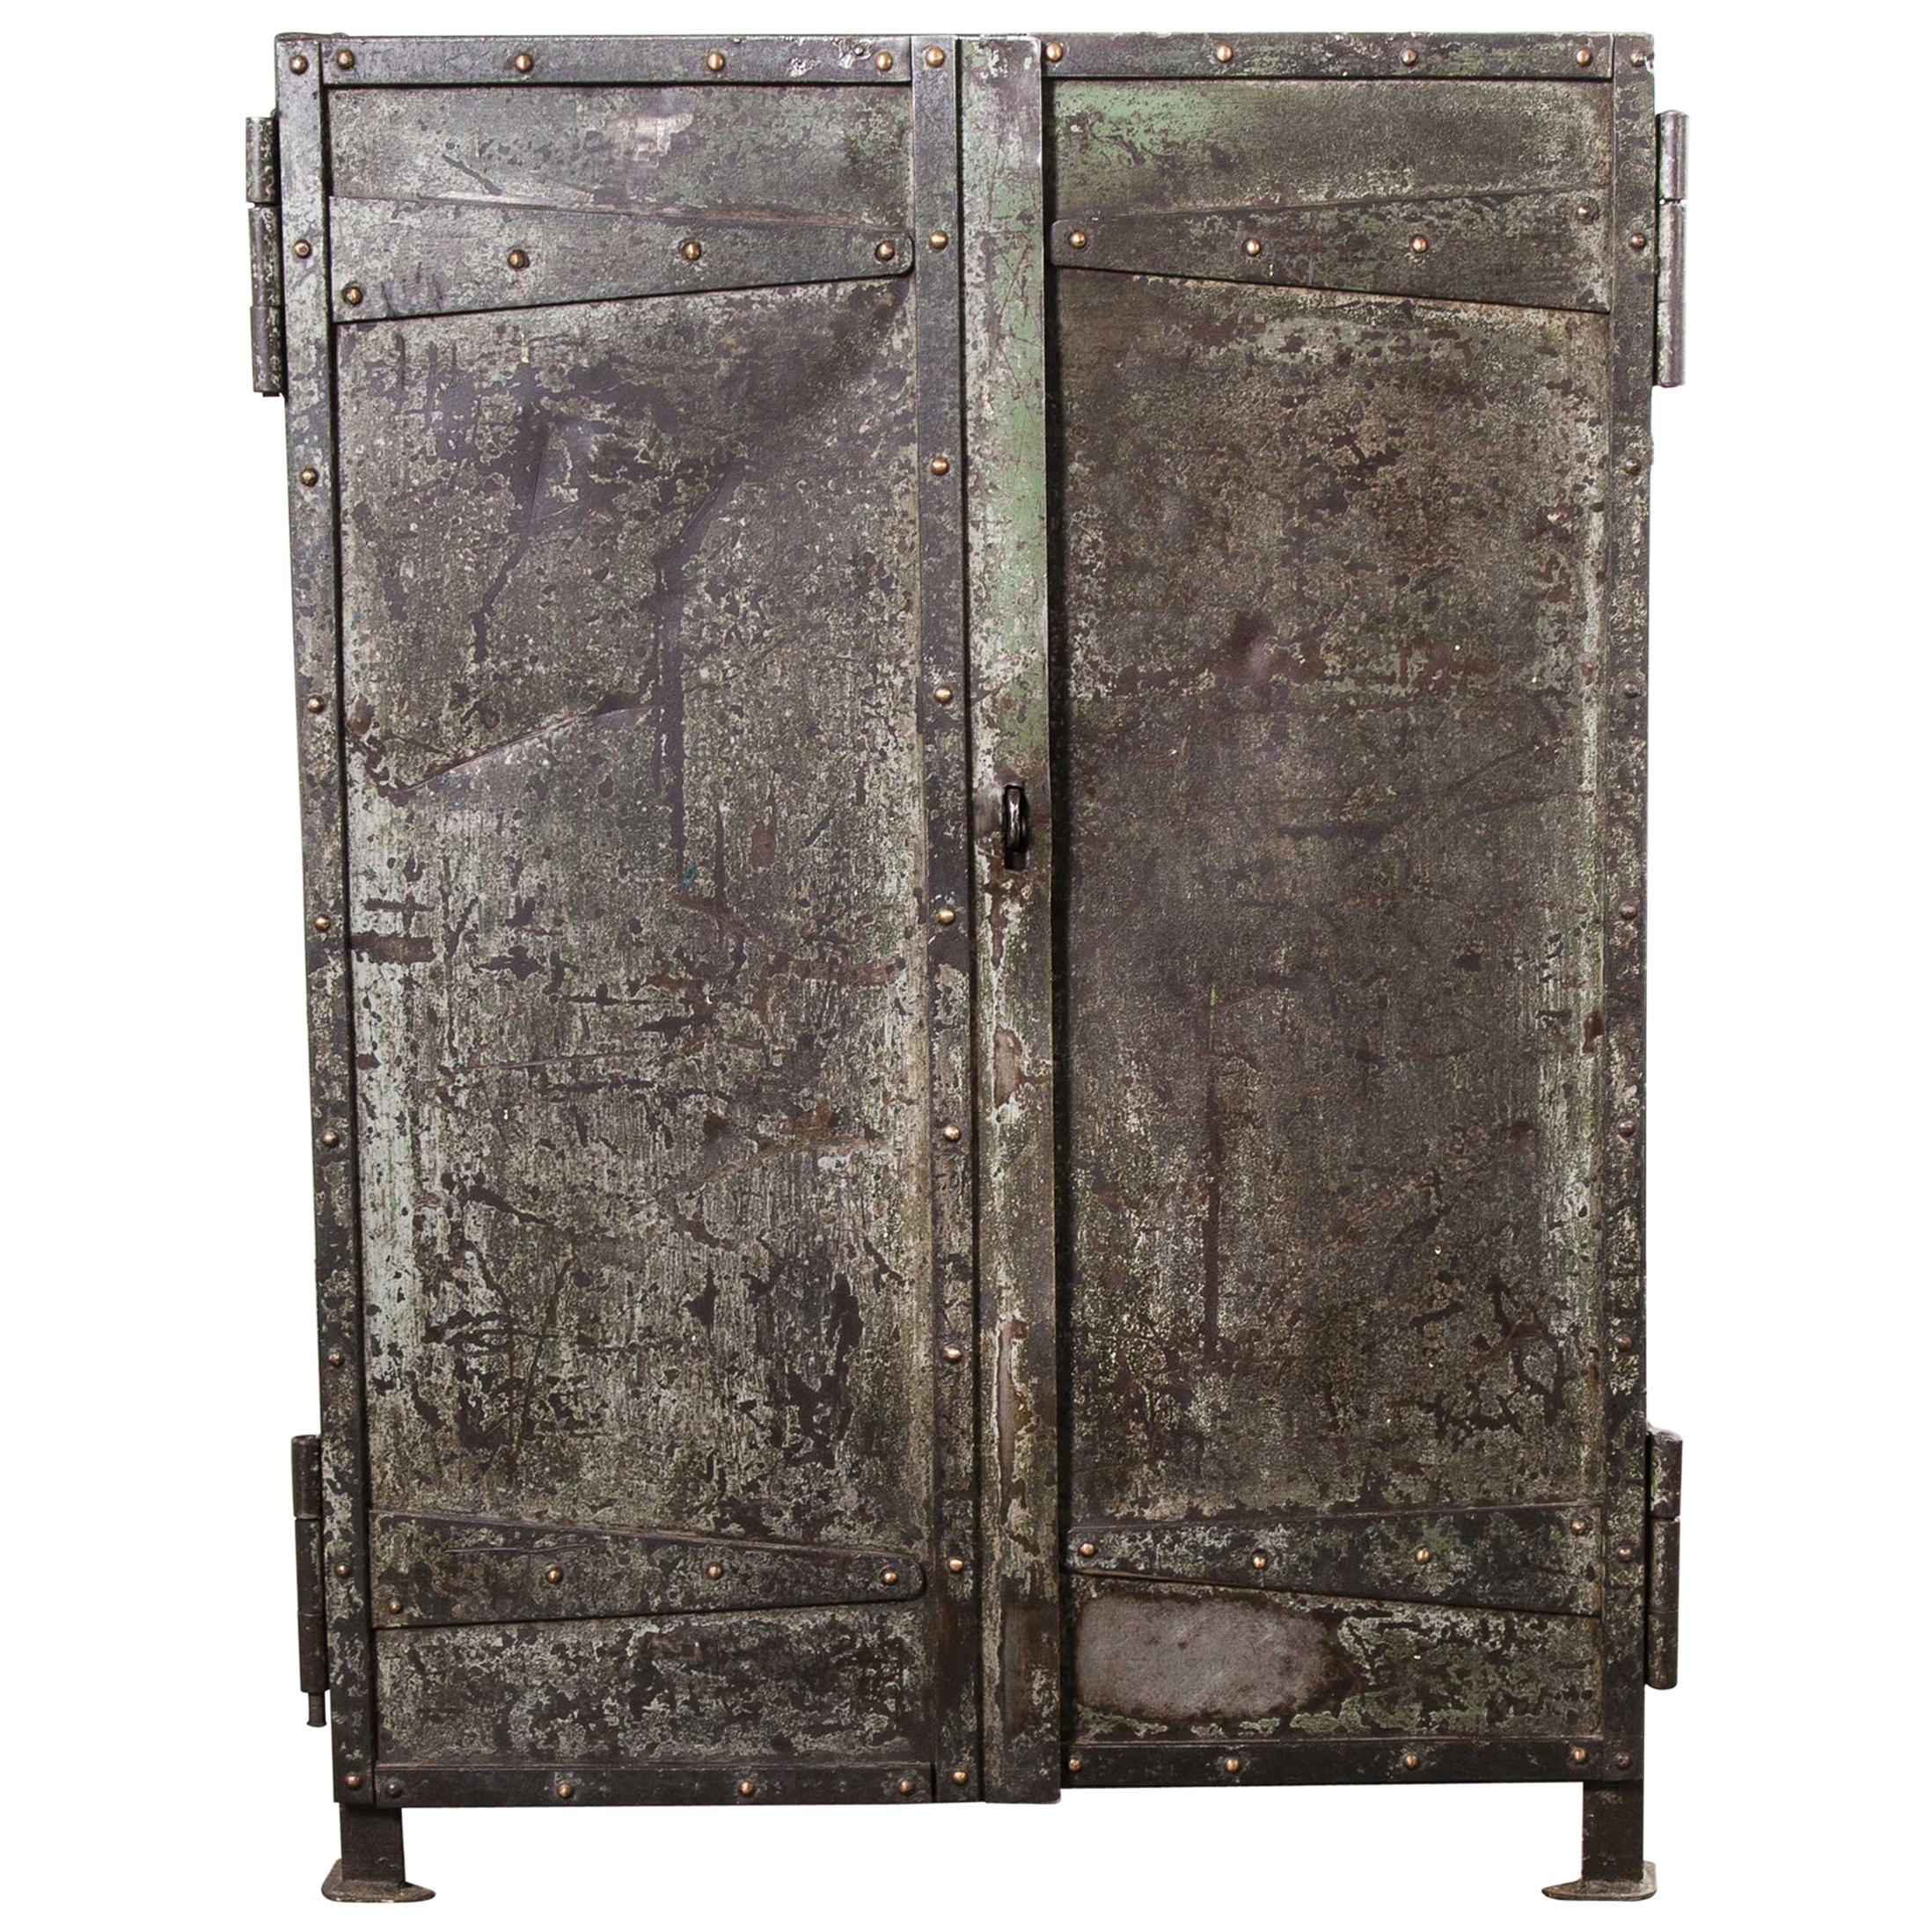 1940s Riveted Industrial Metal Storage Cabinet, Cupboard